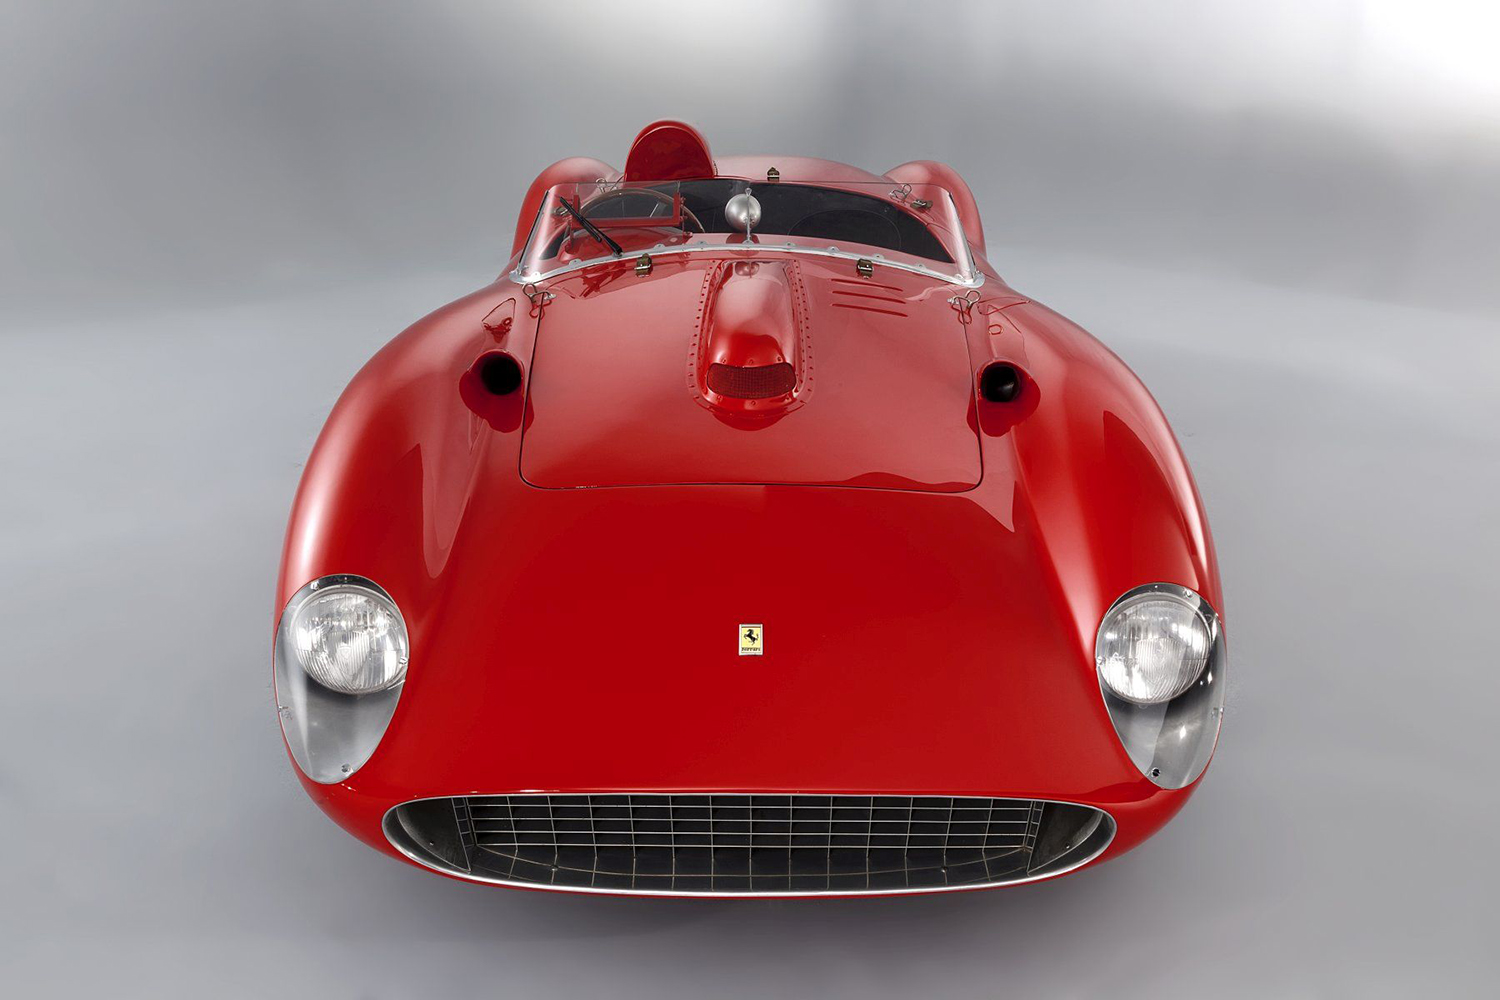 48 7億円でメッシが落札したといわれる 335s フェラーリは1950年代に300km H超を実現していた 自動車情報 ニュース Web Cartop